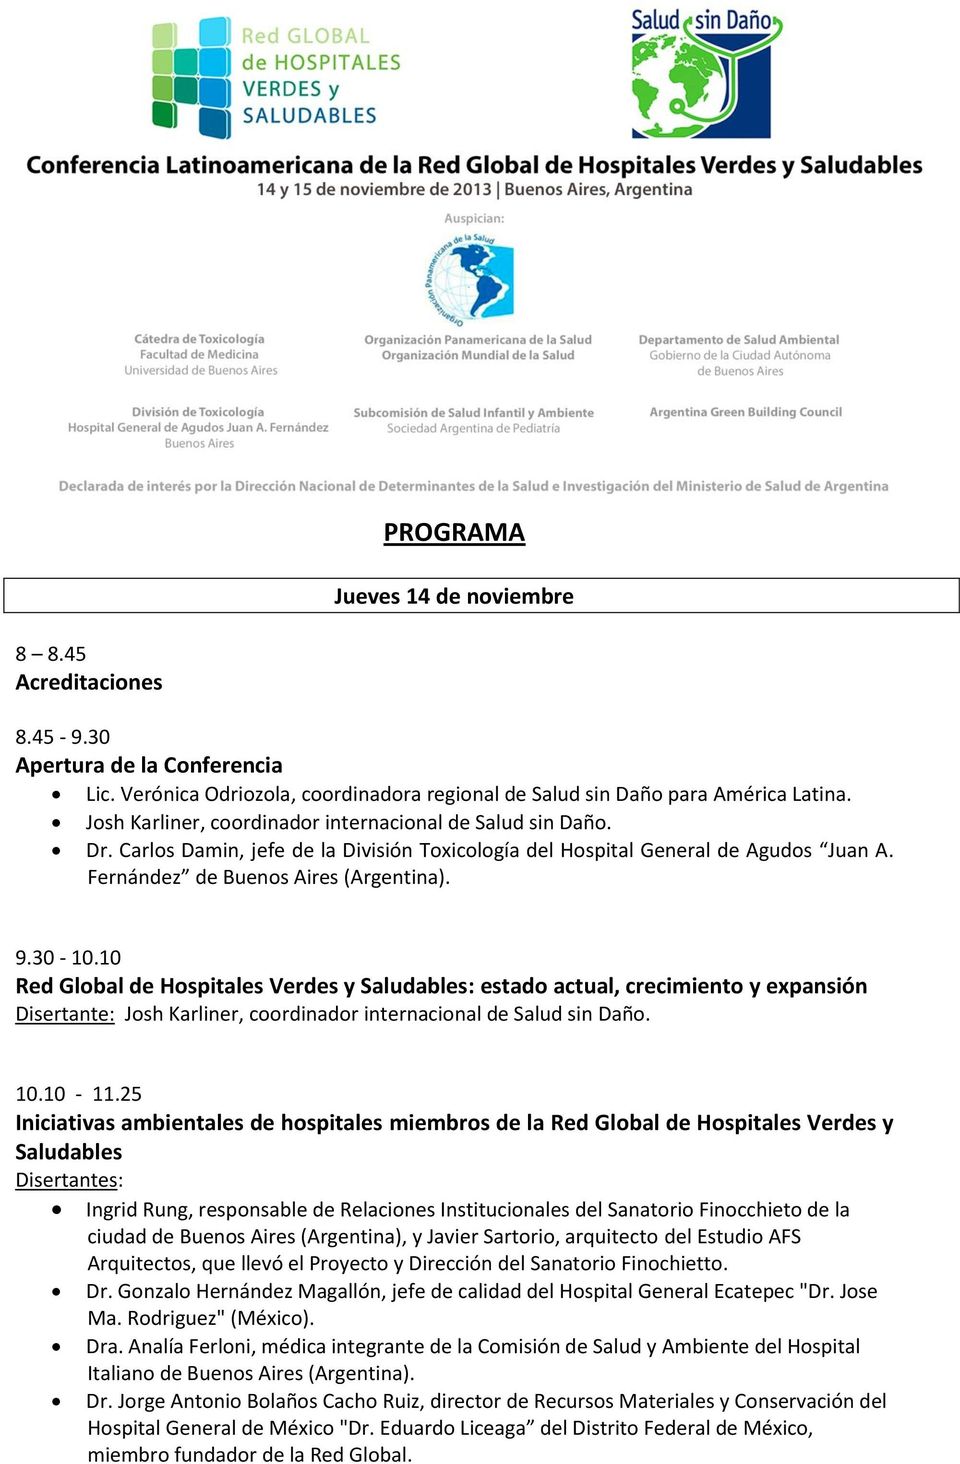 10 Red Global de Hospitales Verdes y : estado actual, crecimiento y expansión Disertante: Josh Karliner, coordinador internacional de Salud sin Daño. 10.10-11.